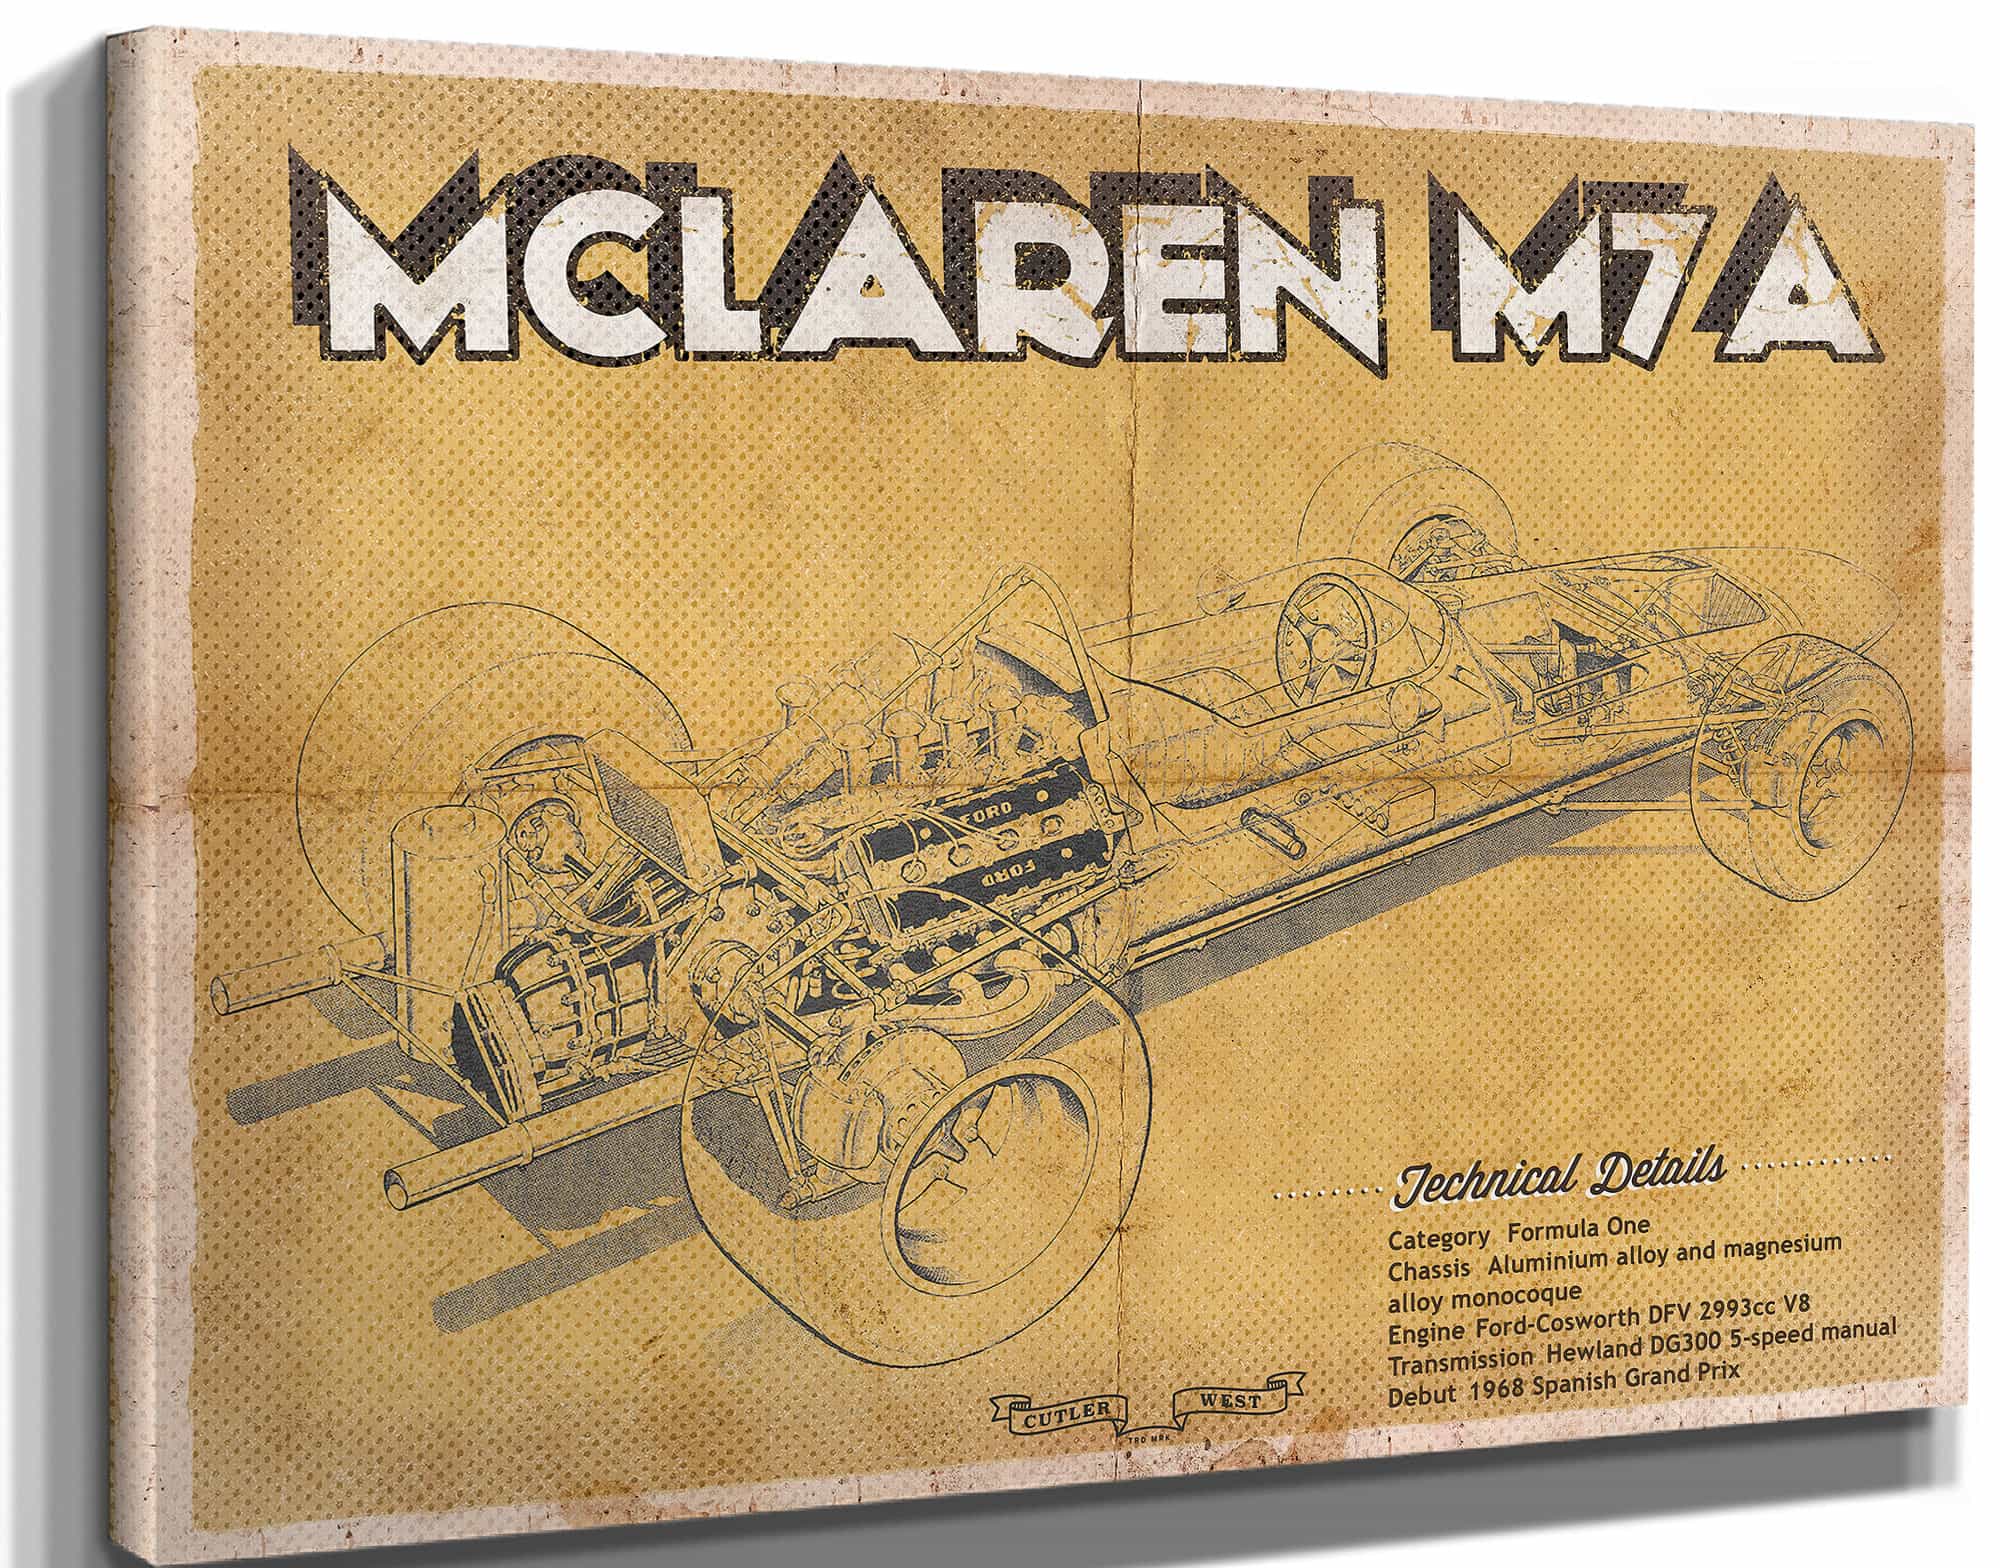 Vintage Mclaren M7a Formula One Race Car Print